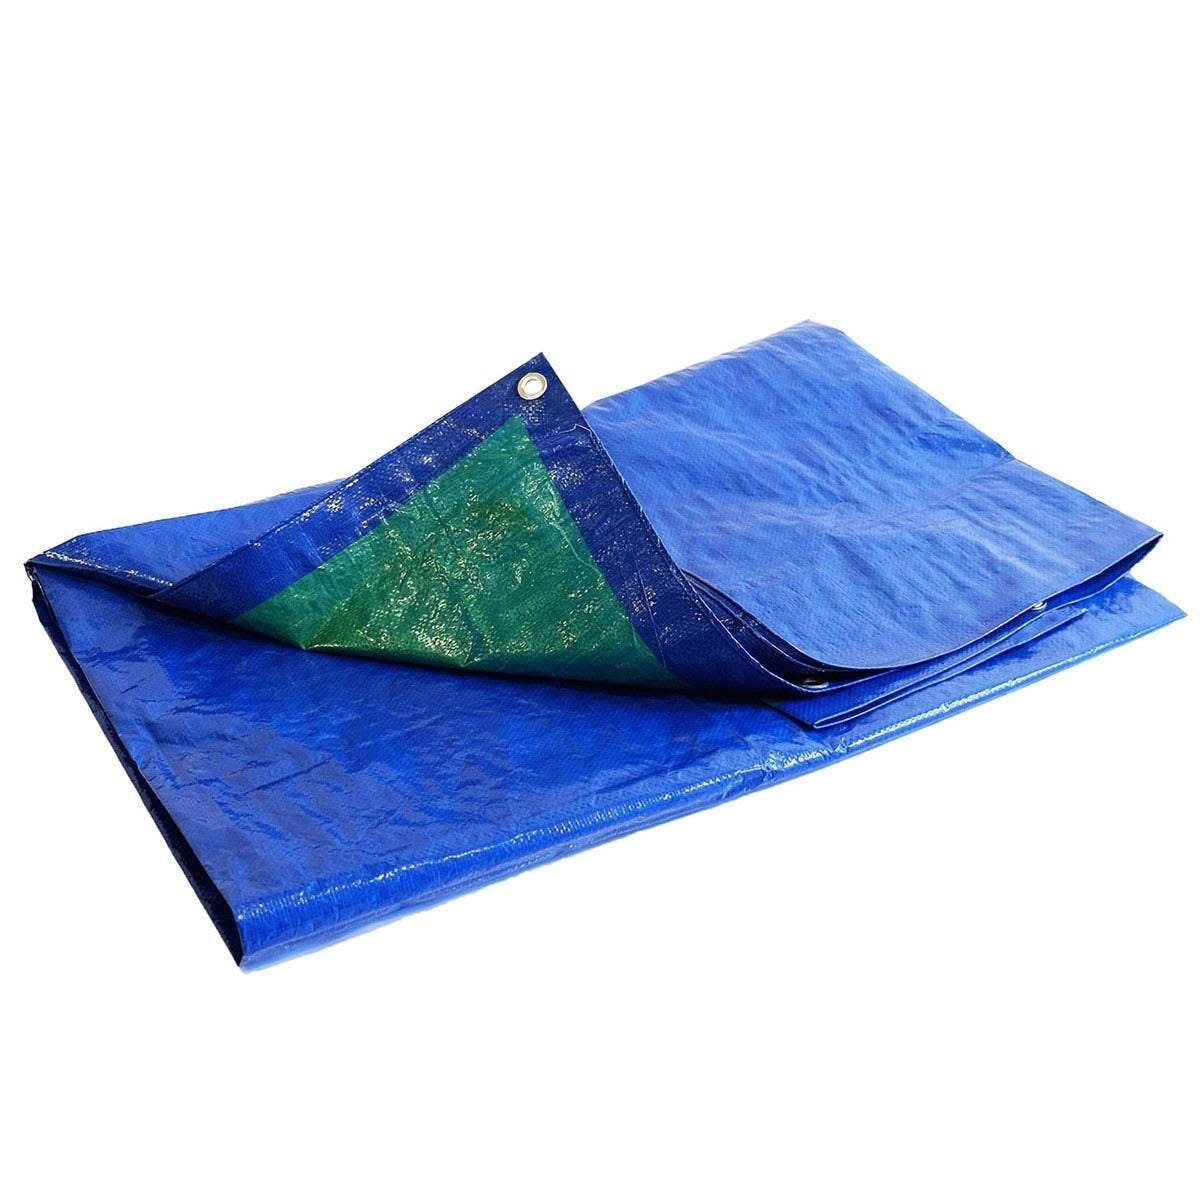 Bâche Bois 4x5 m - TECPLAST 150BO - Bleue et Verte - Haute Qualité - Bâche de protection imperméable pour Bois de chauffage 0